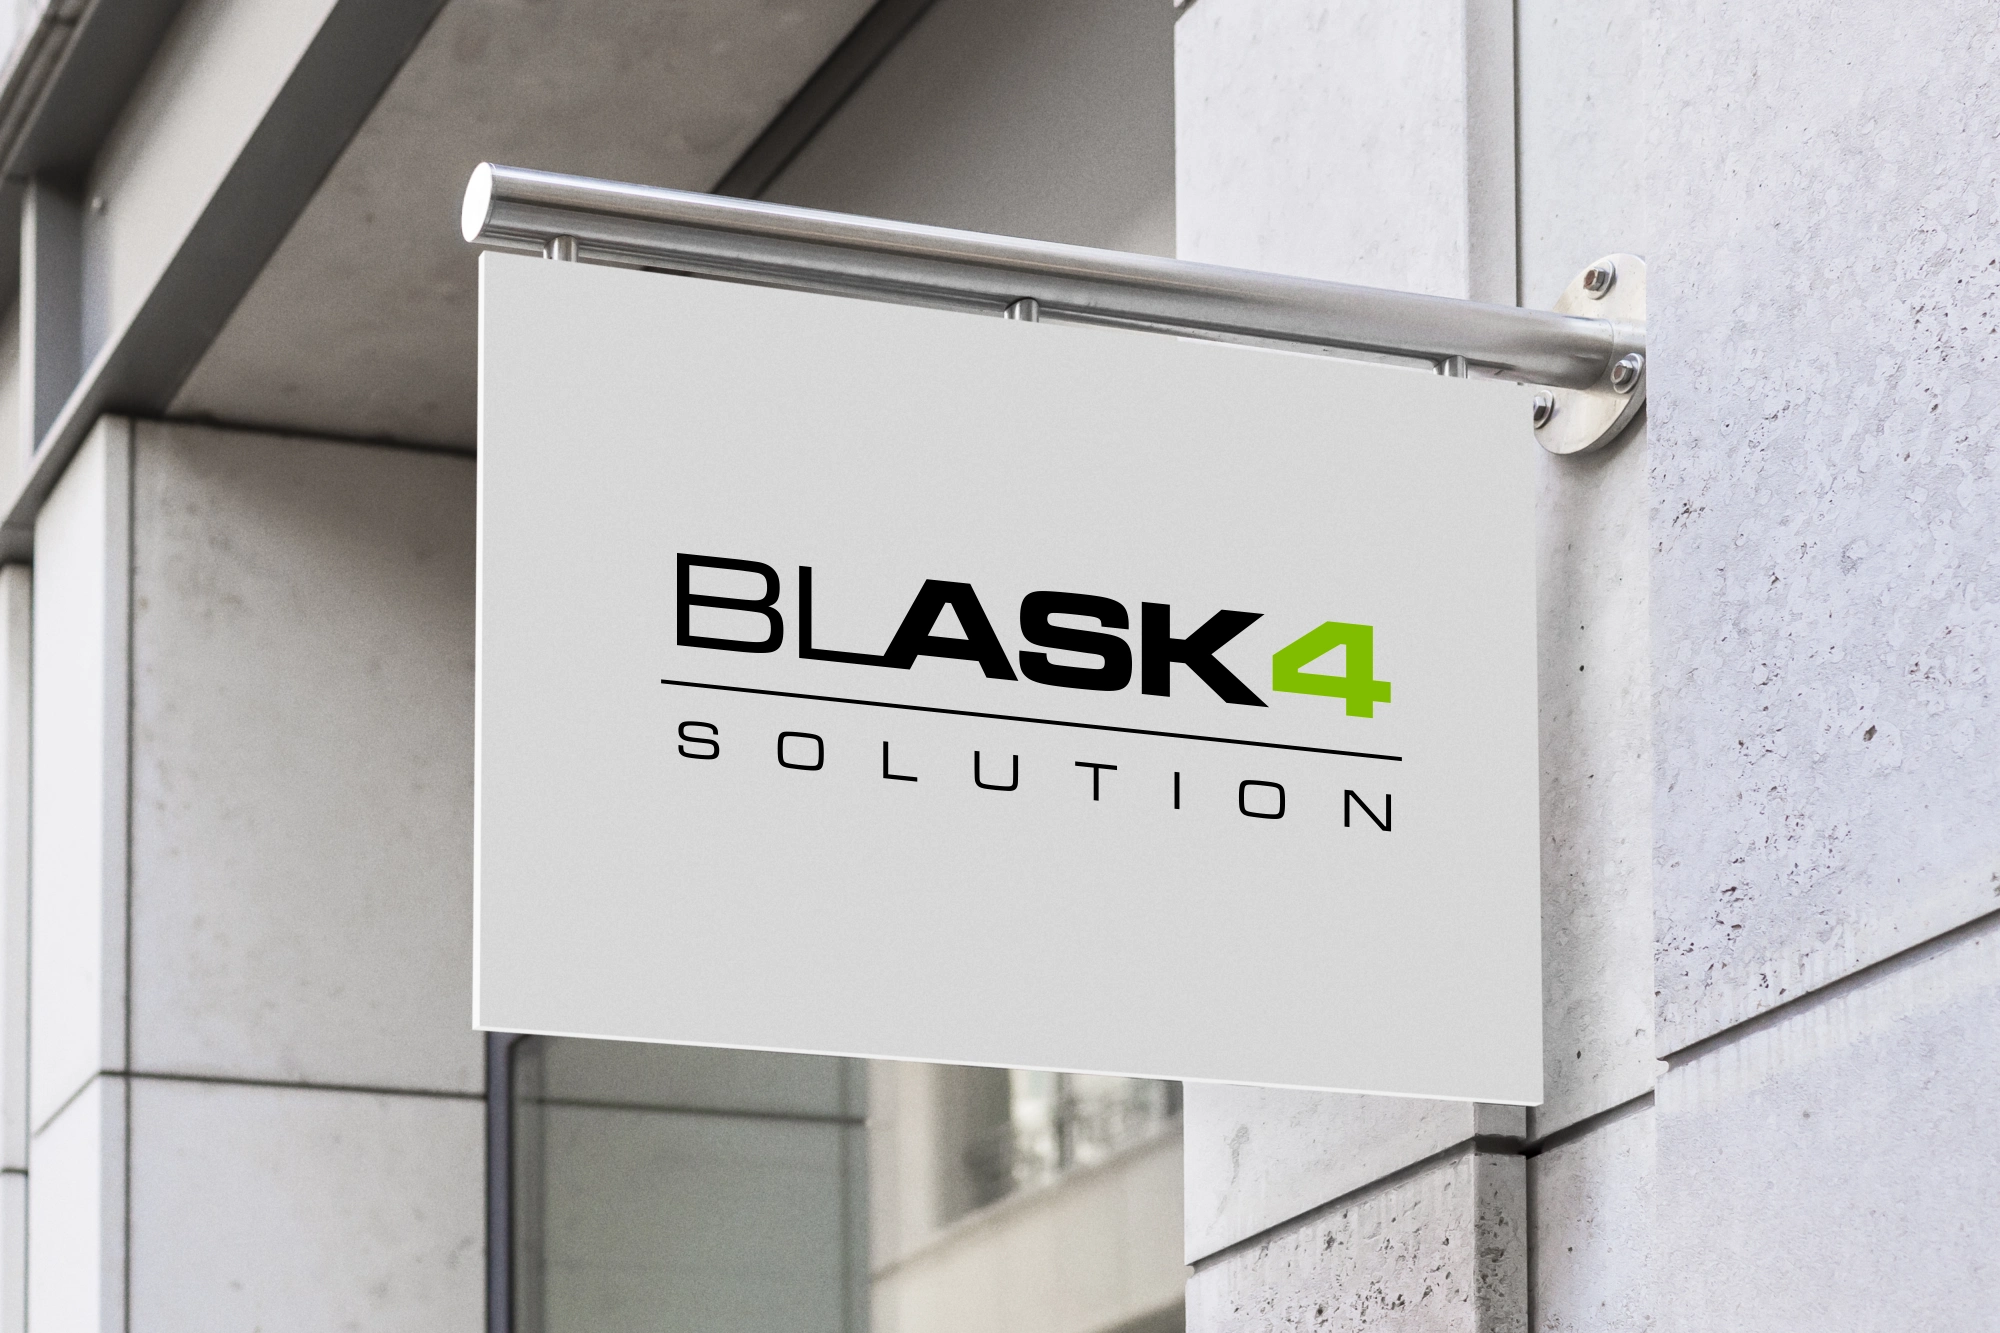 Logo Design blask4solution auf dem Schild auf dem Gebäude im Straßenbild.